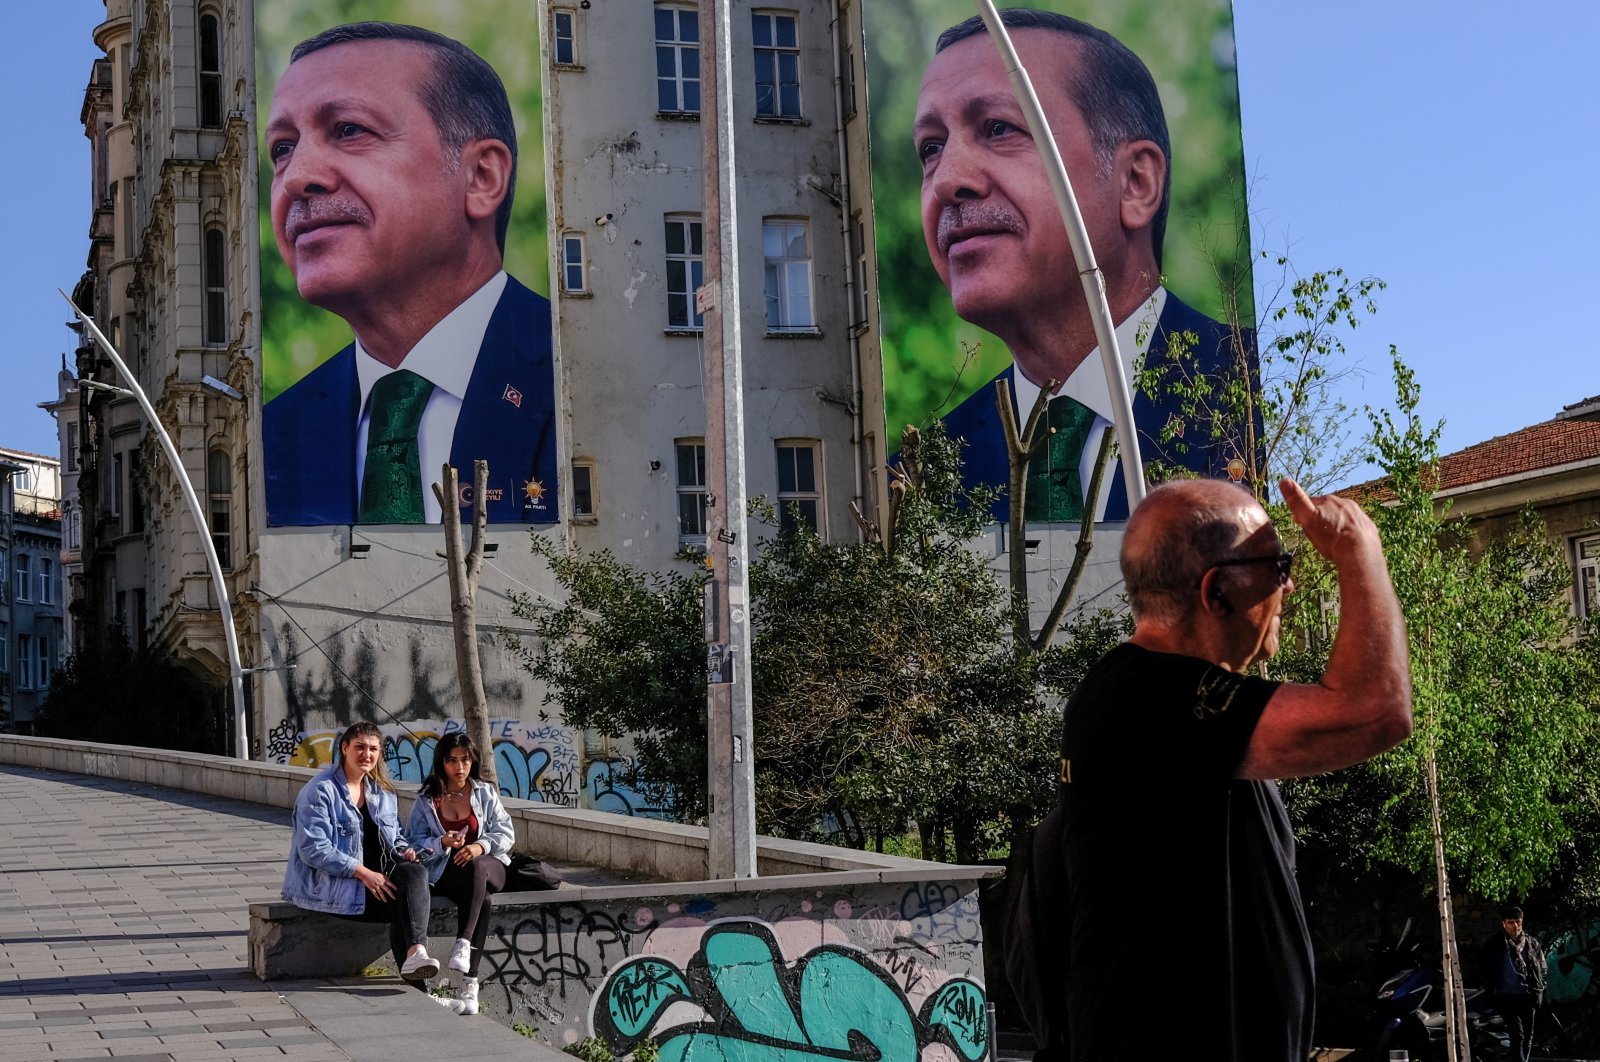 Efek riak: Pemilih tak terlihat dan drama malam pemilihan Türkiye